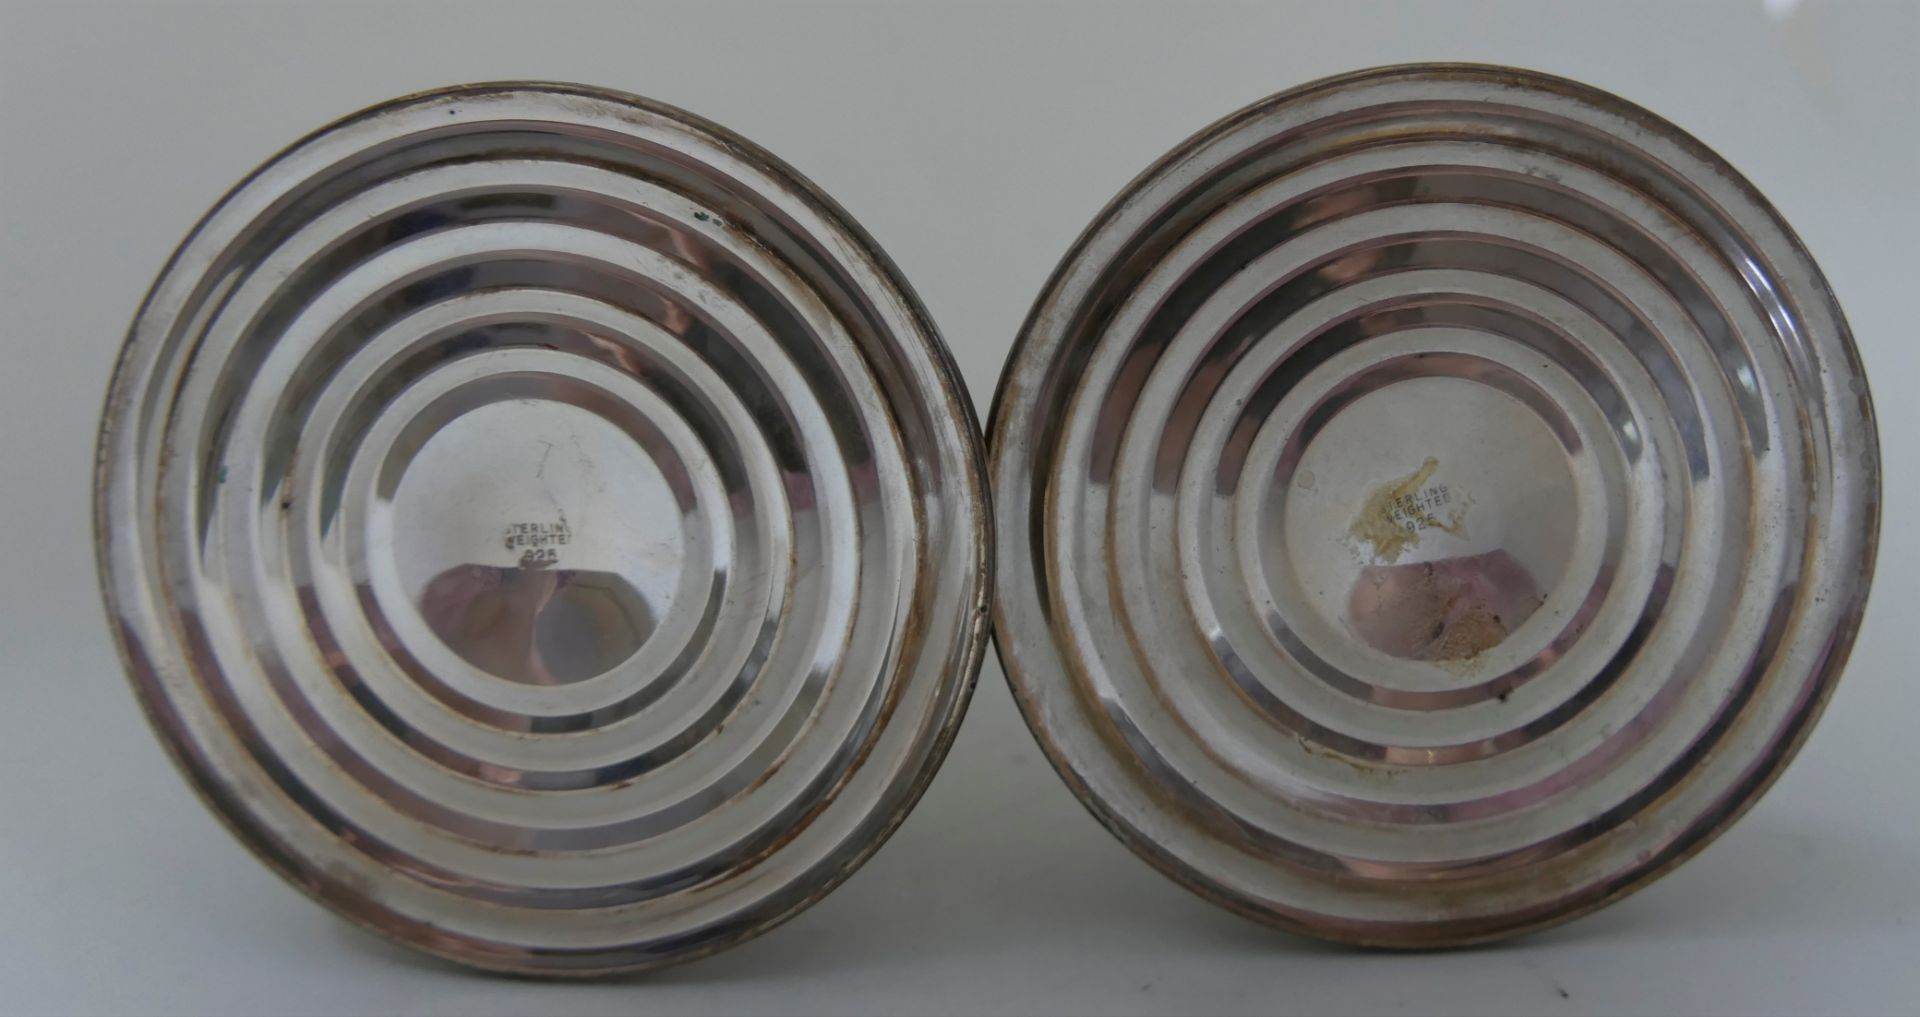 2 Kerzenständer, beide gepunzt 925 Sterling Silber. Höhe bis ca. 11,5 cm. Gesamtgewicht ca. 437,5 - Image 2 of 2